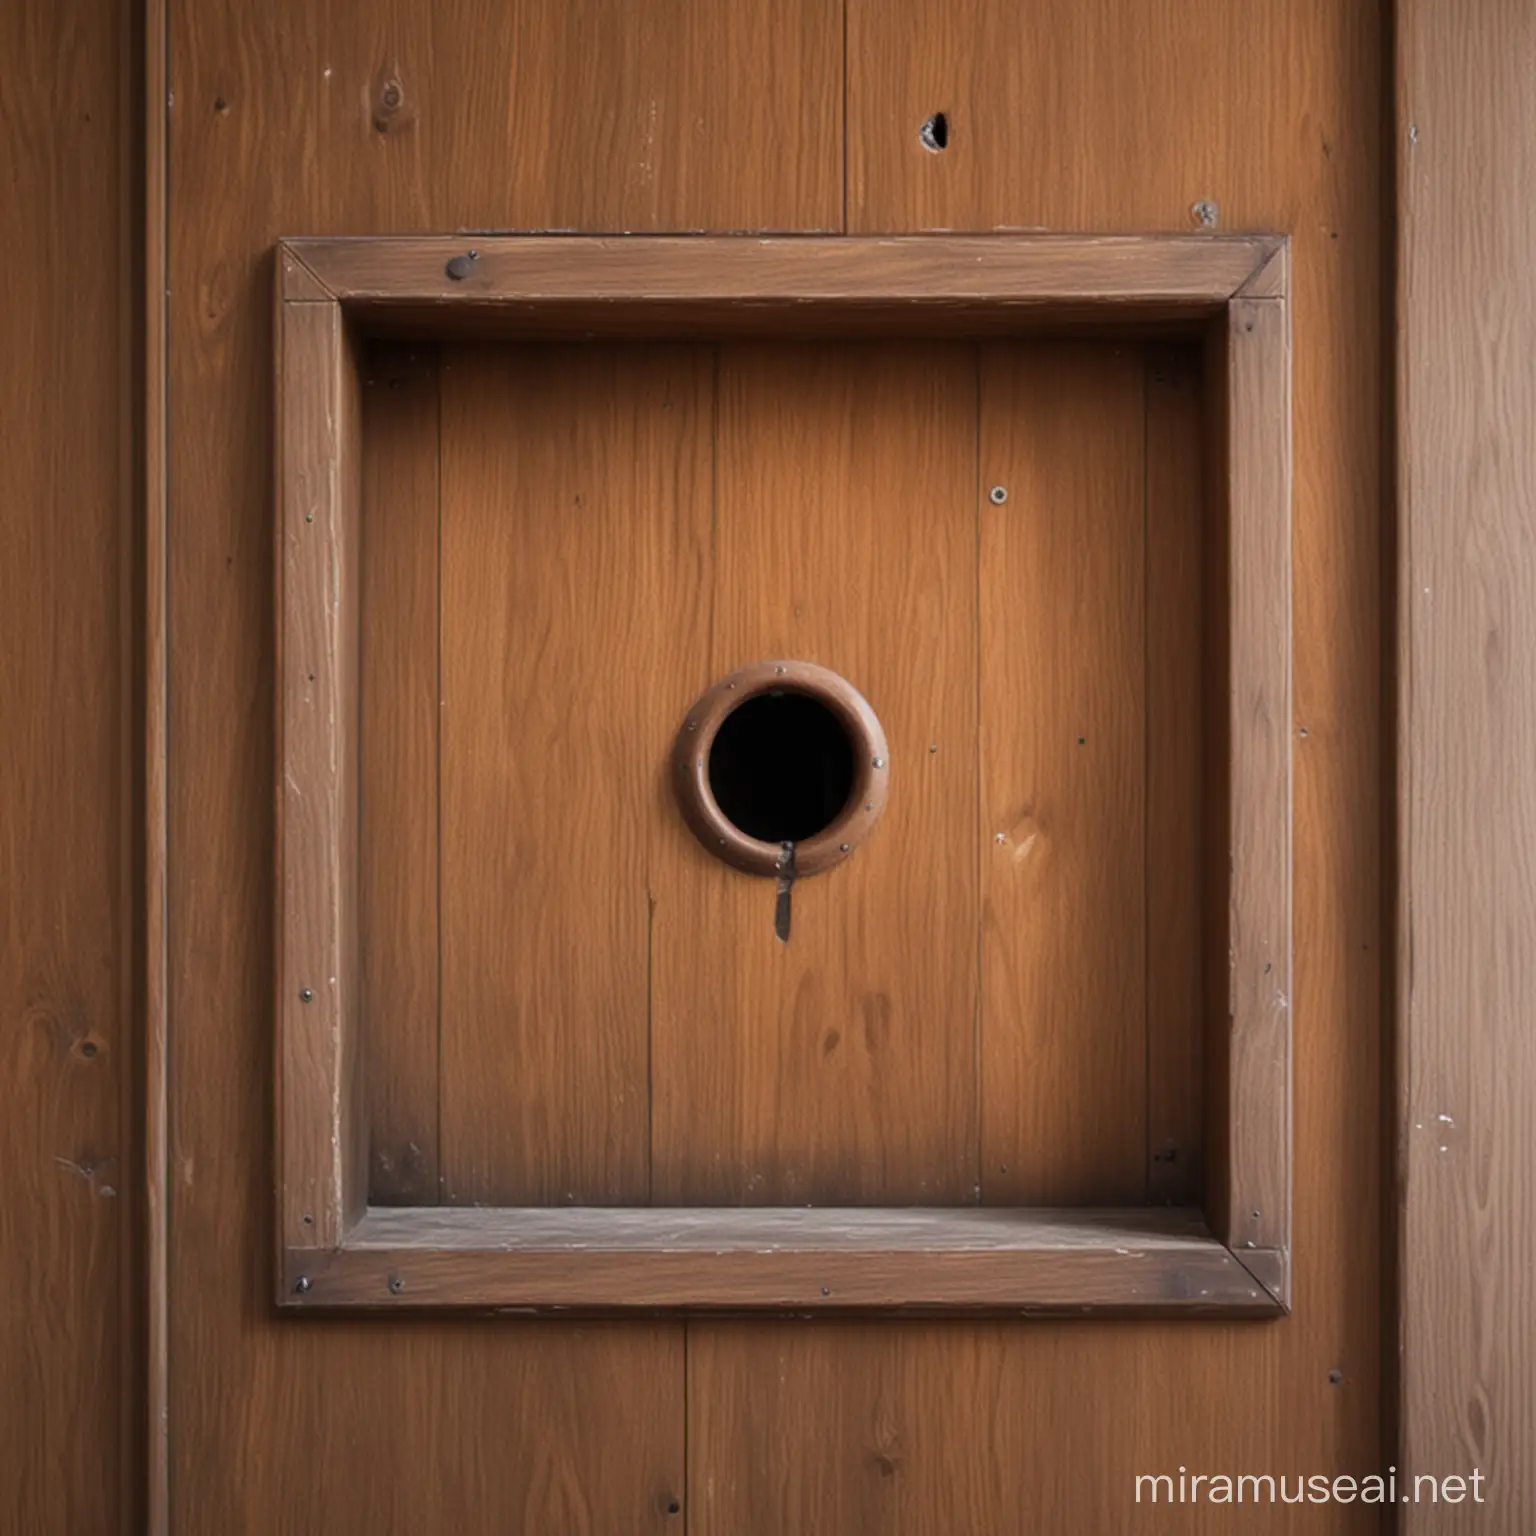 Glory hole inside a confessional